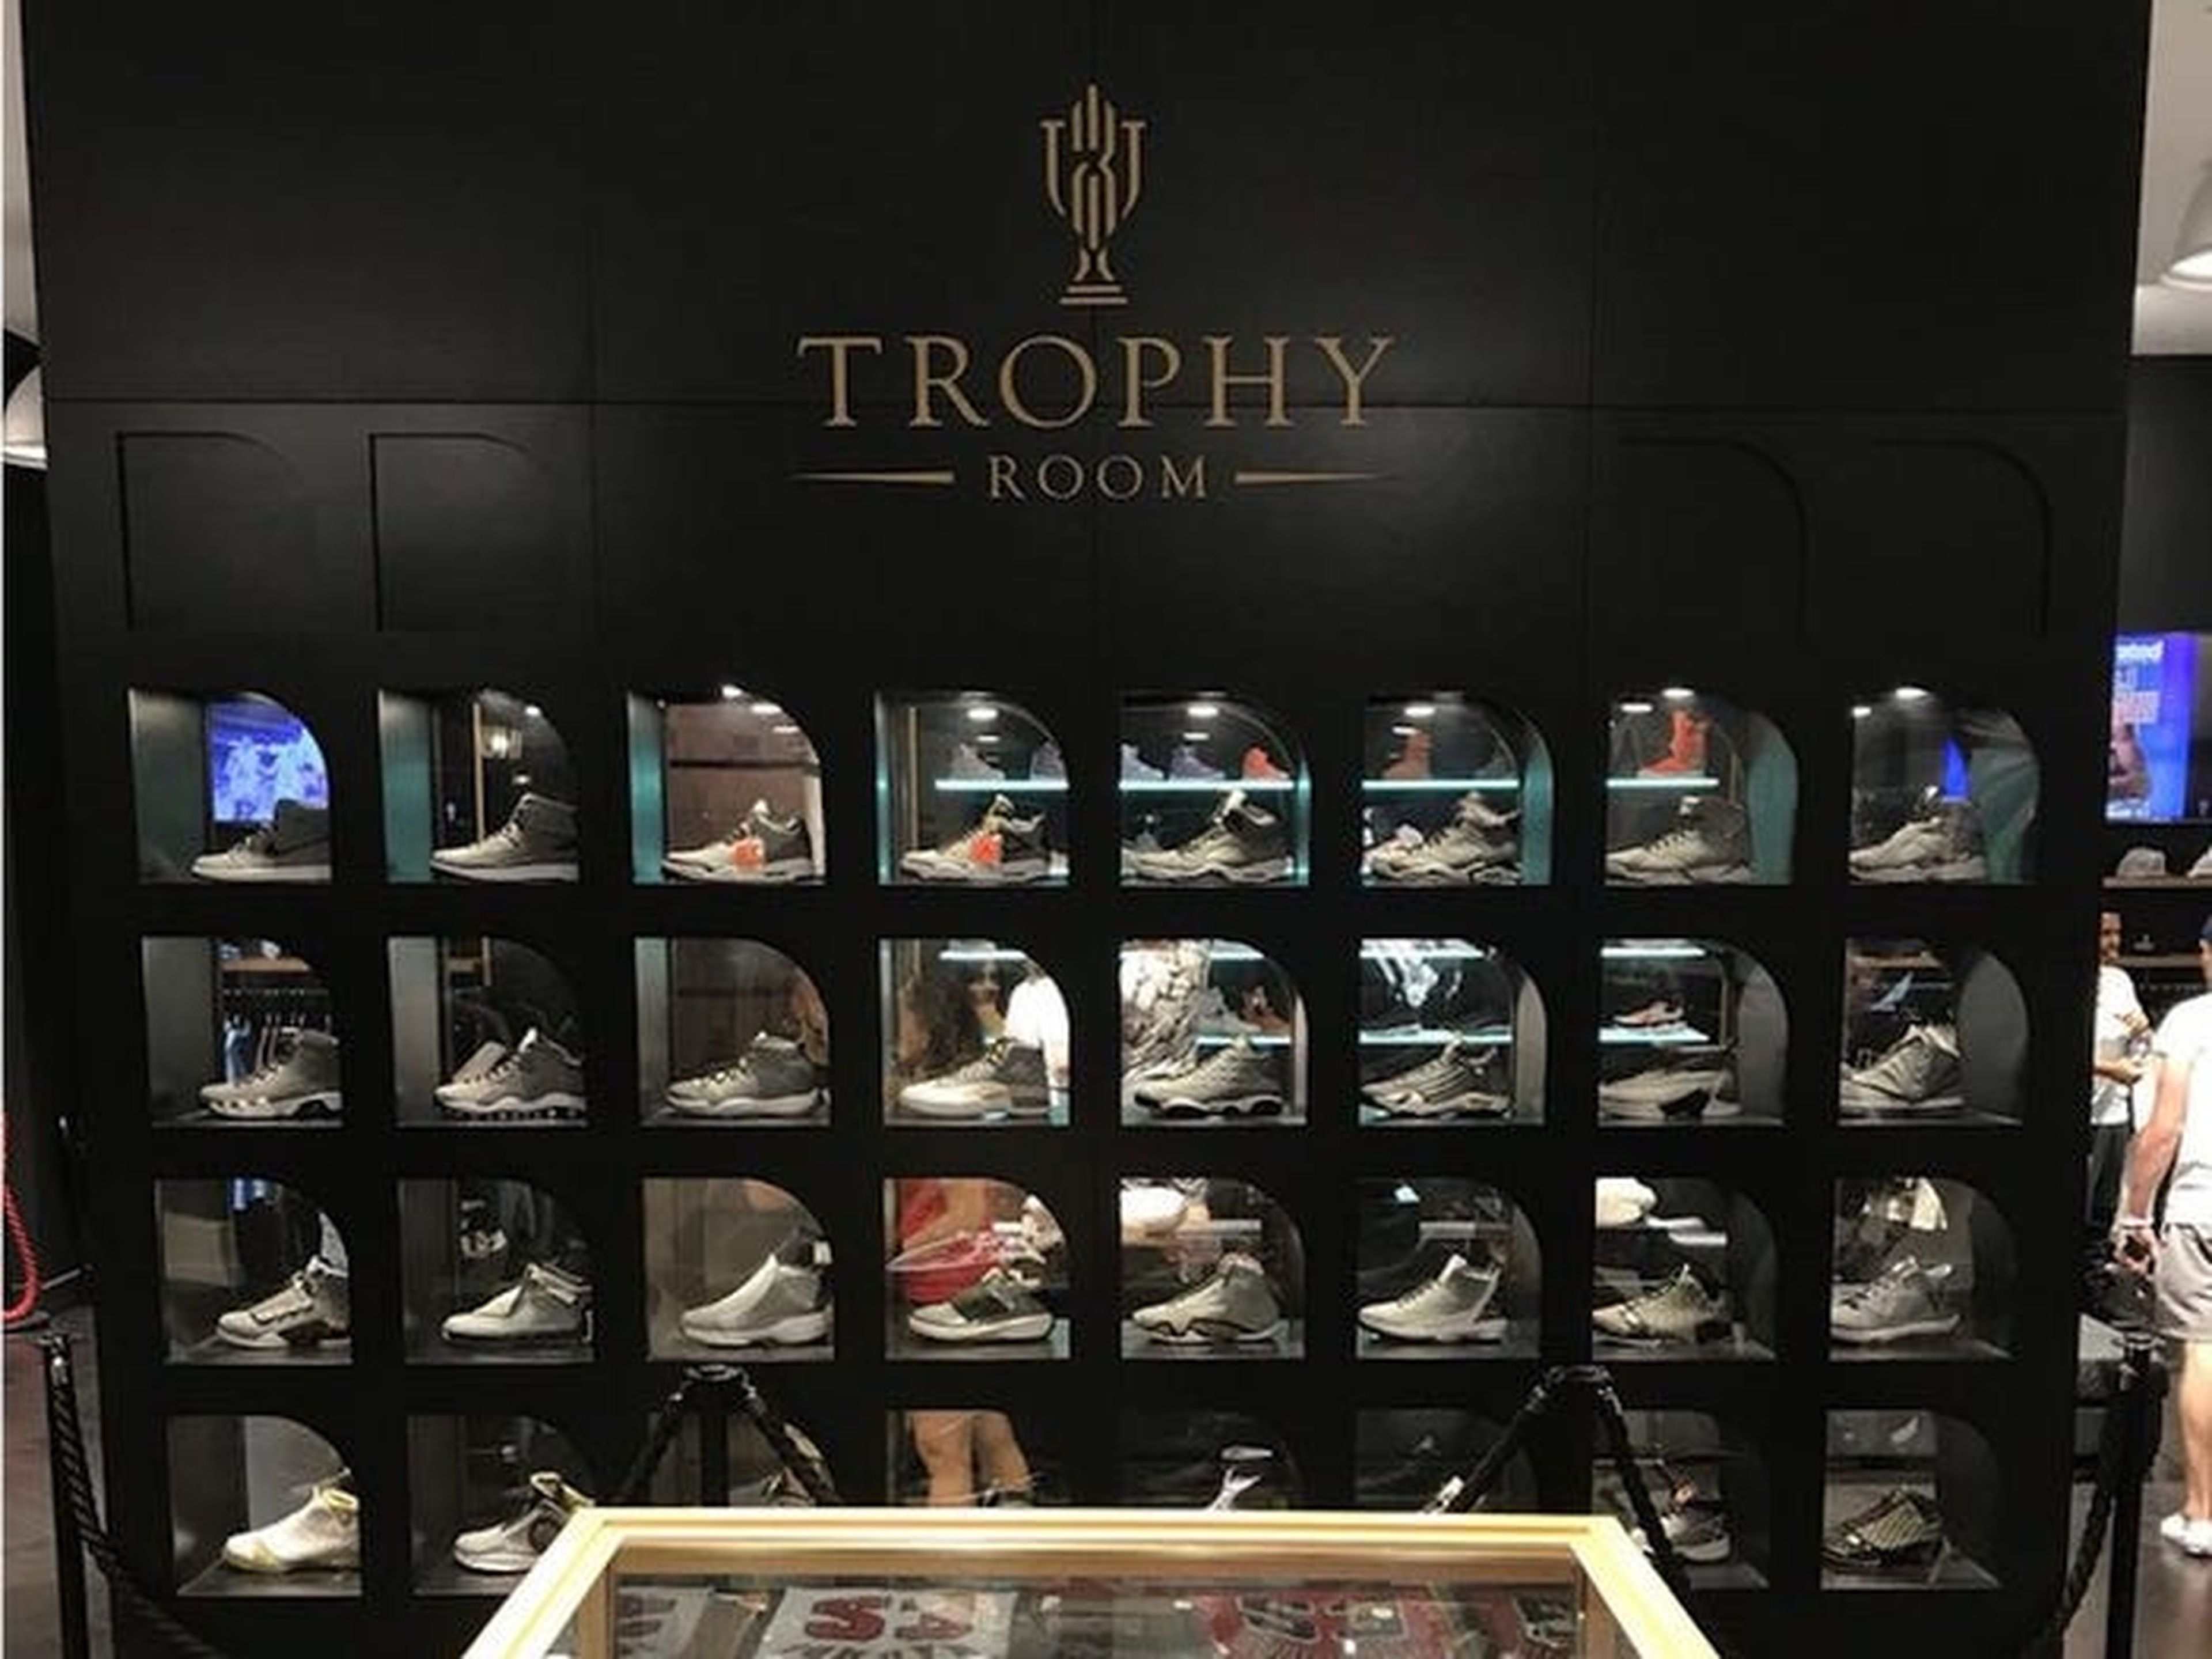 Marcus, el segundo hijo de Jordan, abrió una tienda de zapatillas en Disney World llamada Trophy Room